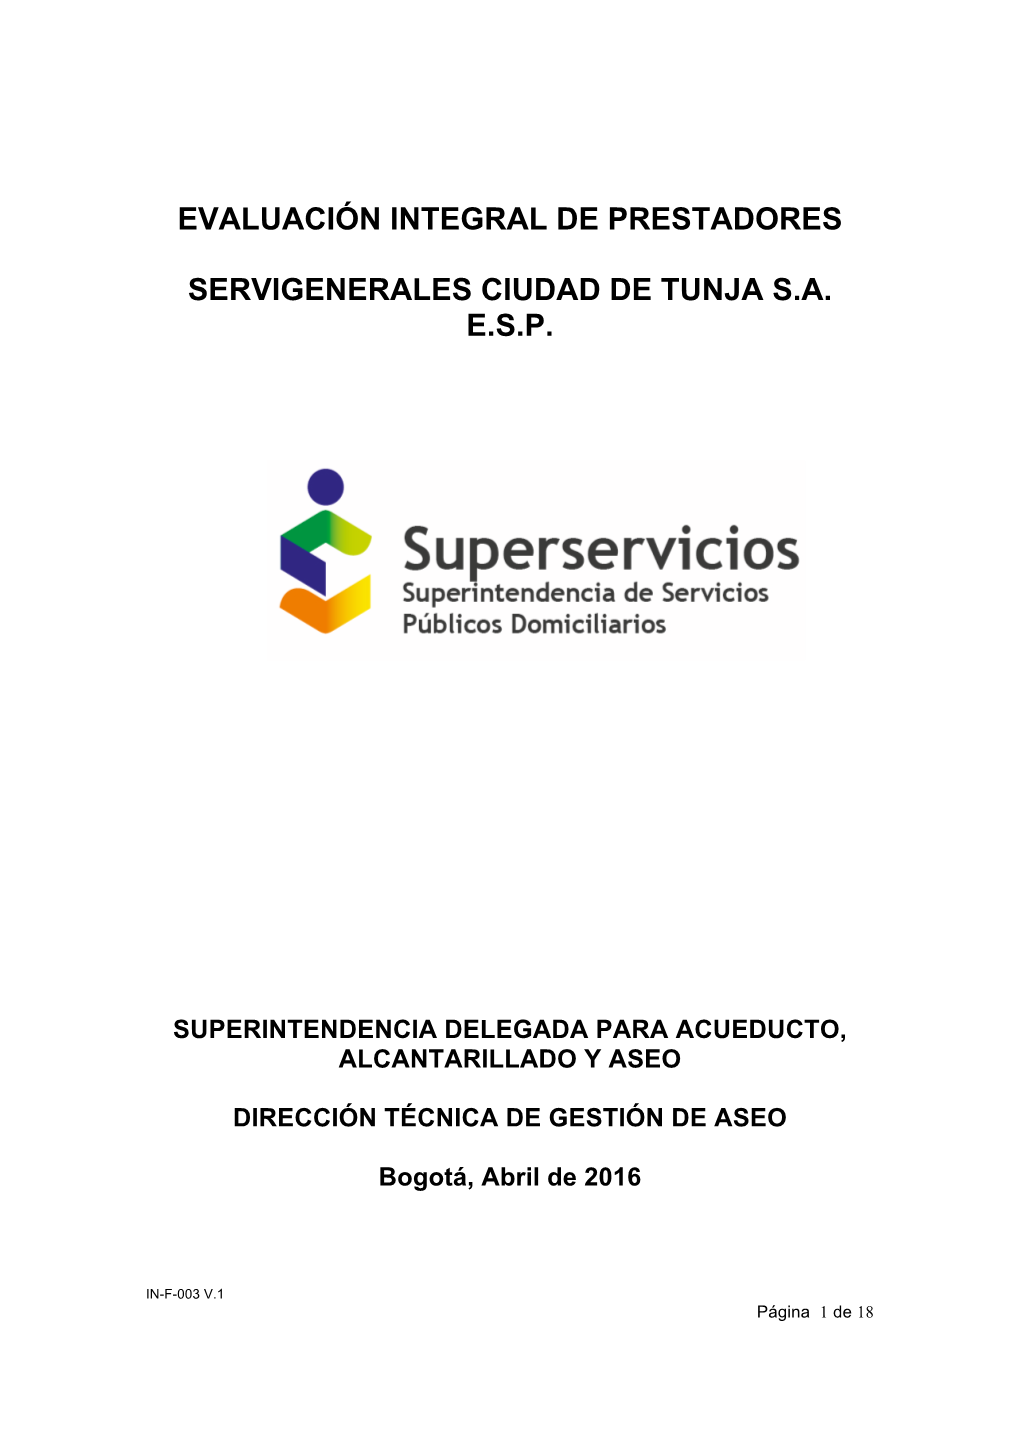 (2015) Evaluación Integral De Prestadores Servigenerales Ciudad De Tunja S.A. E.S.P